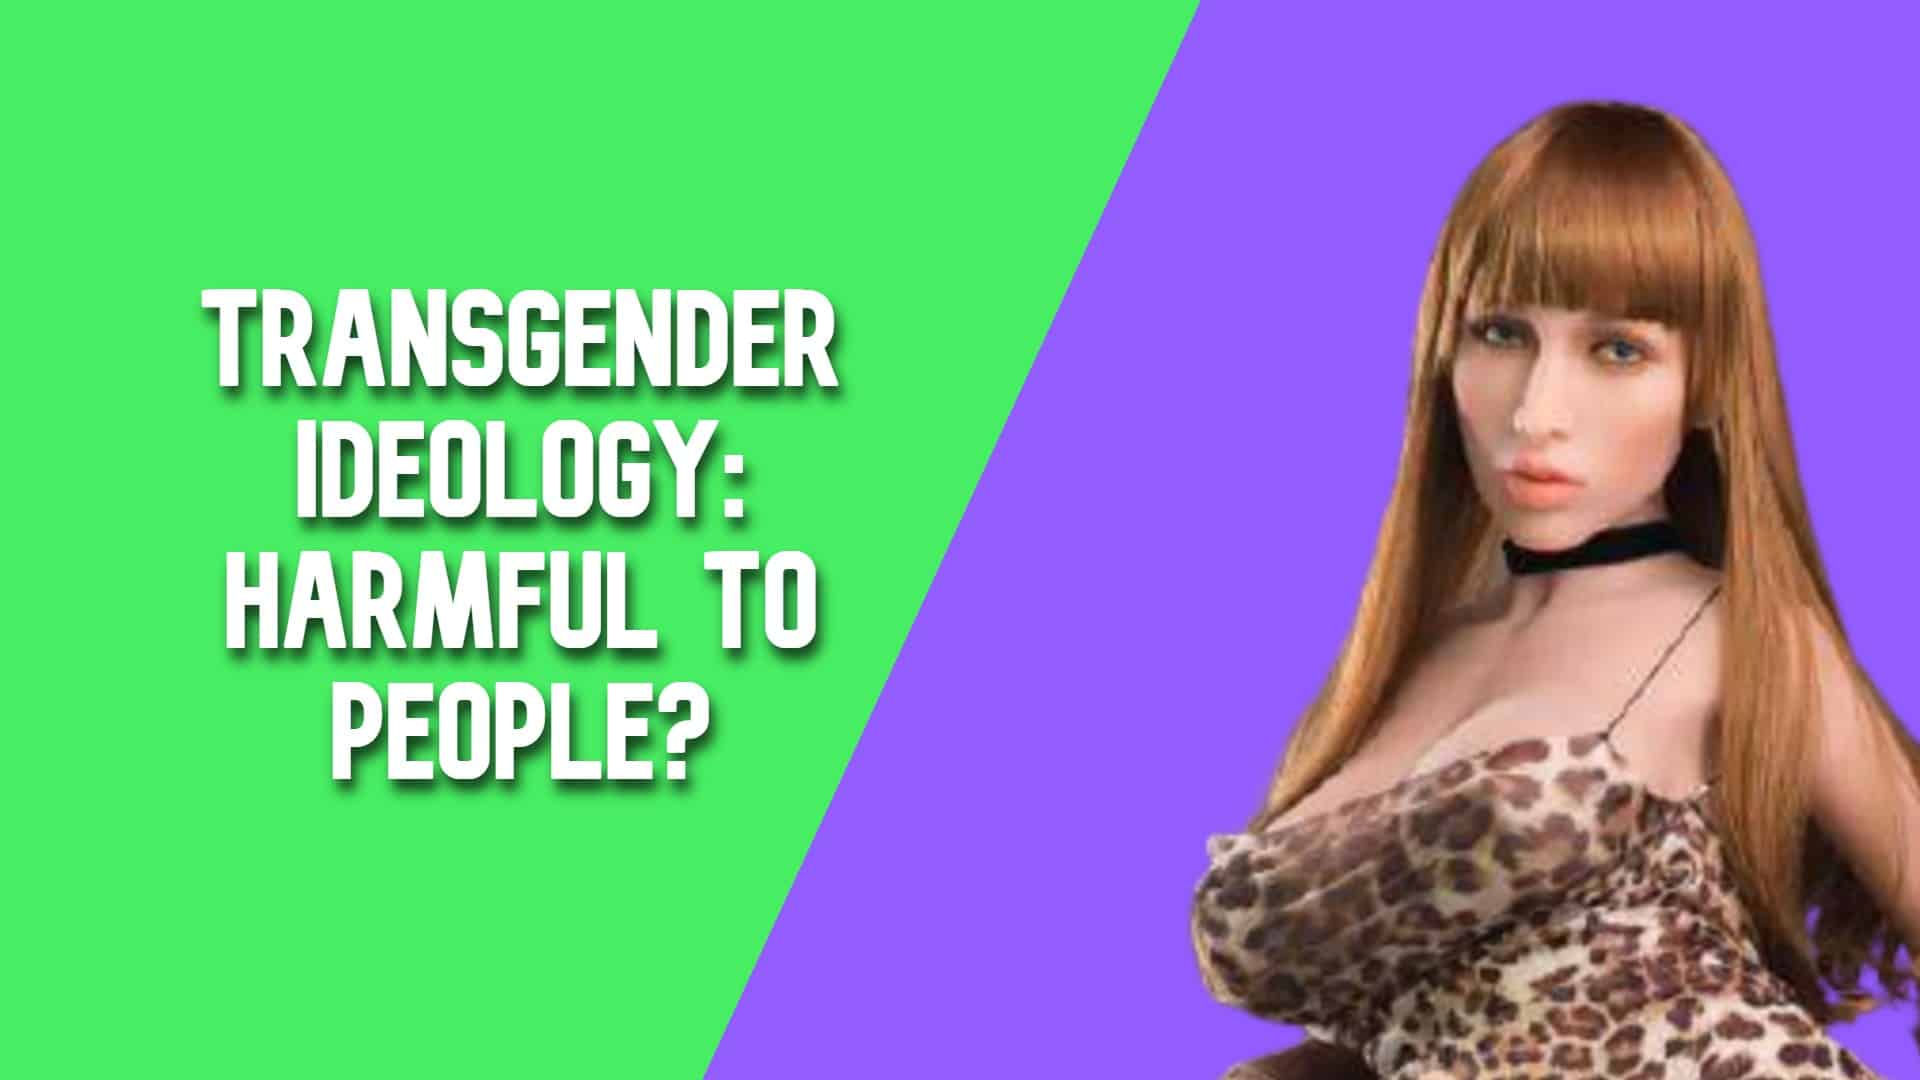 Transgender Ideology: Harmful to People?